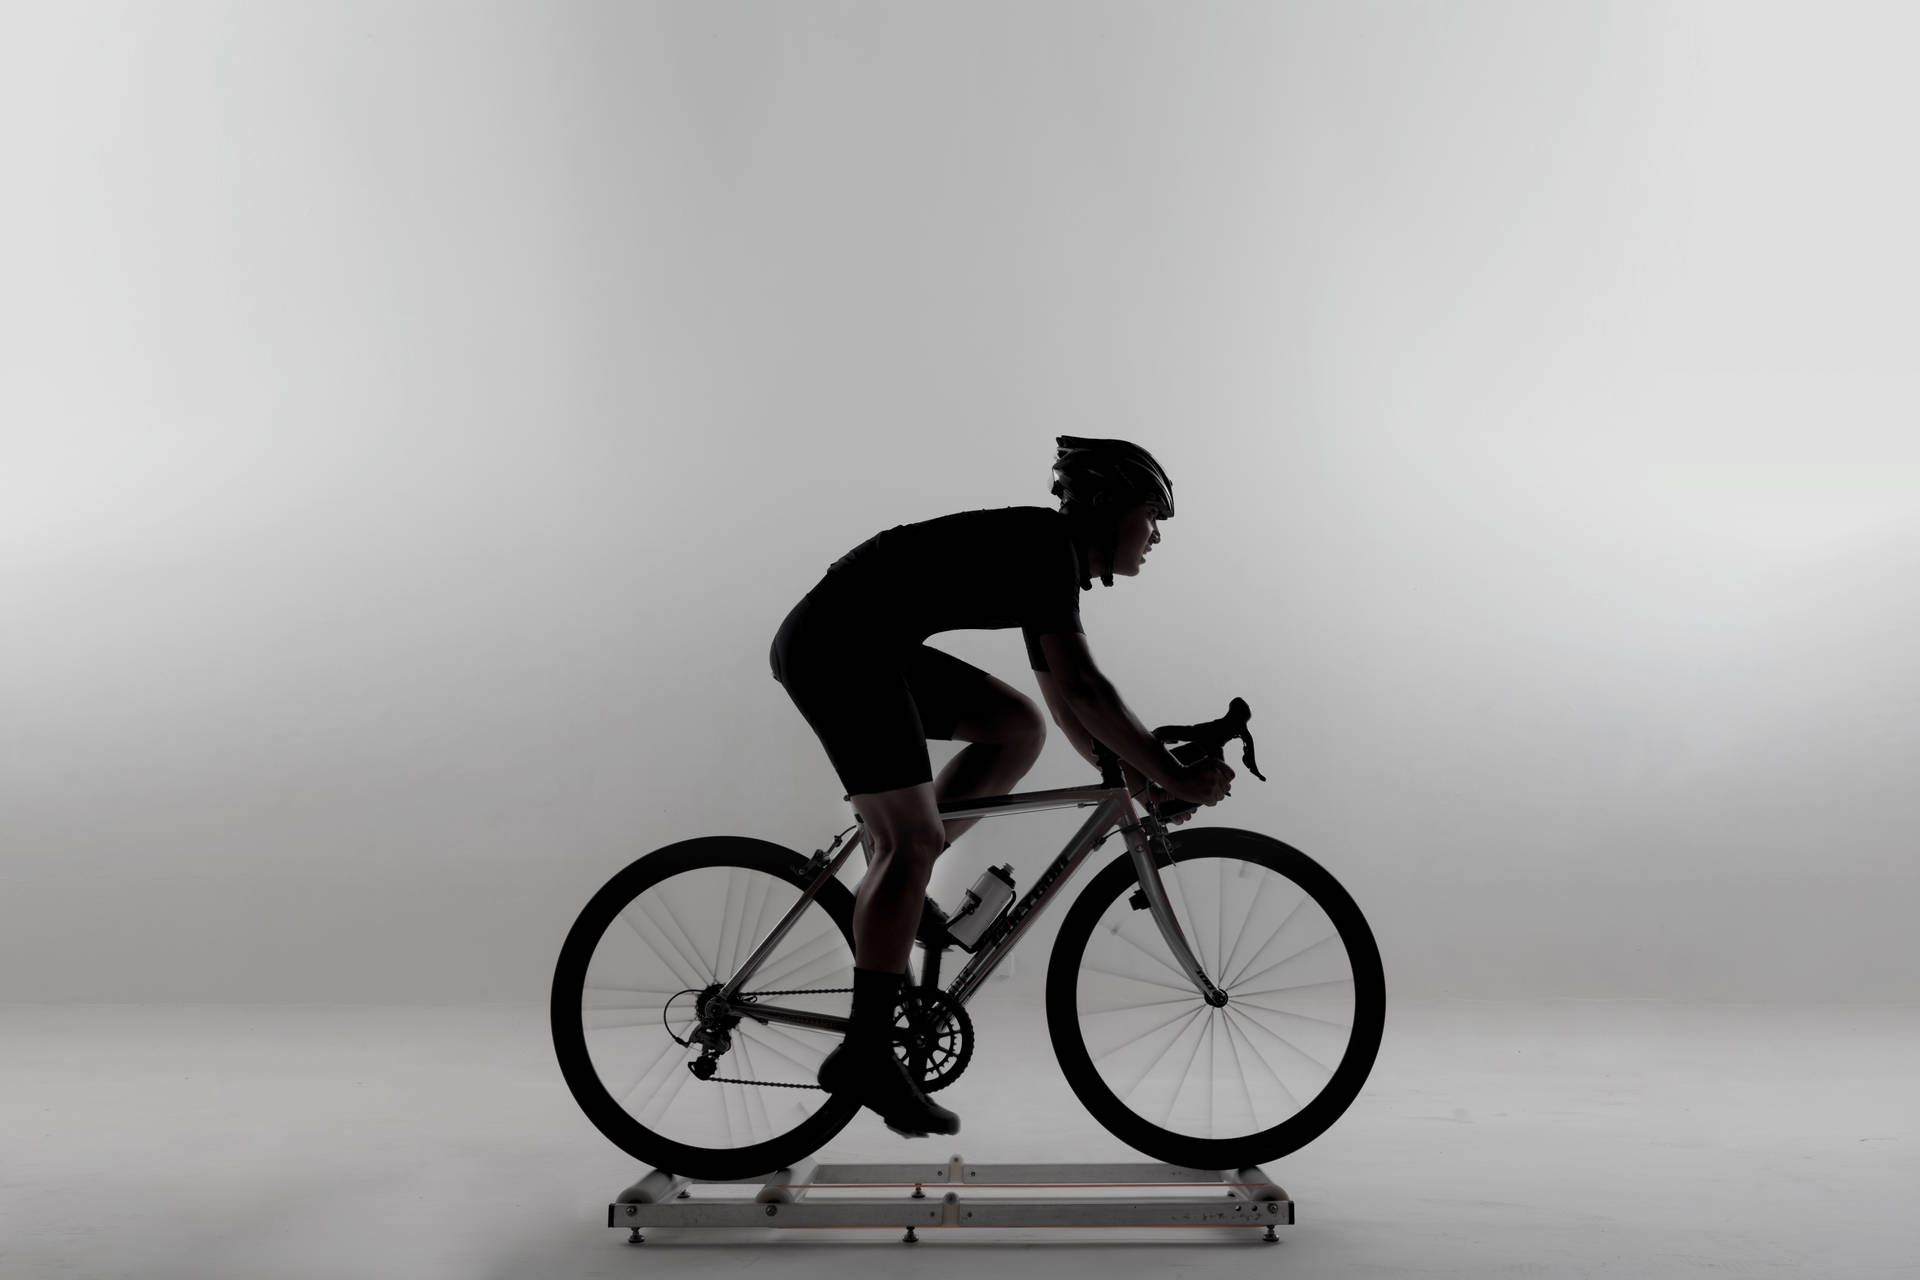 Monochrome Cycling Man Silhouette